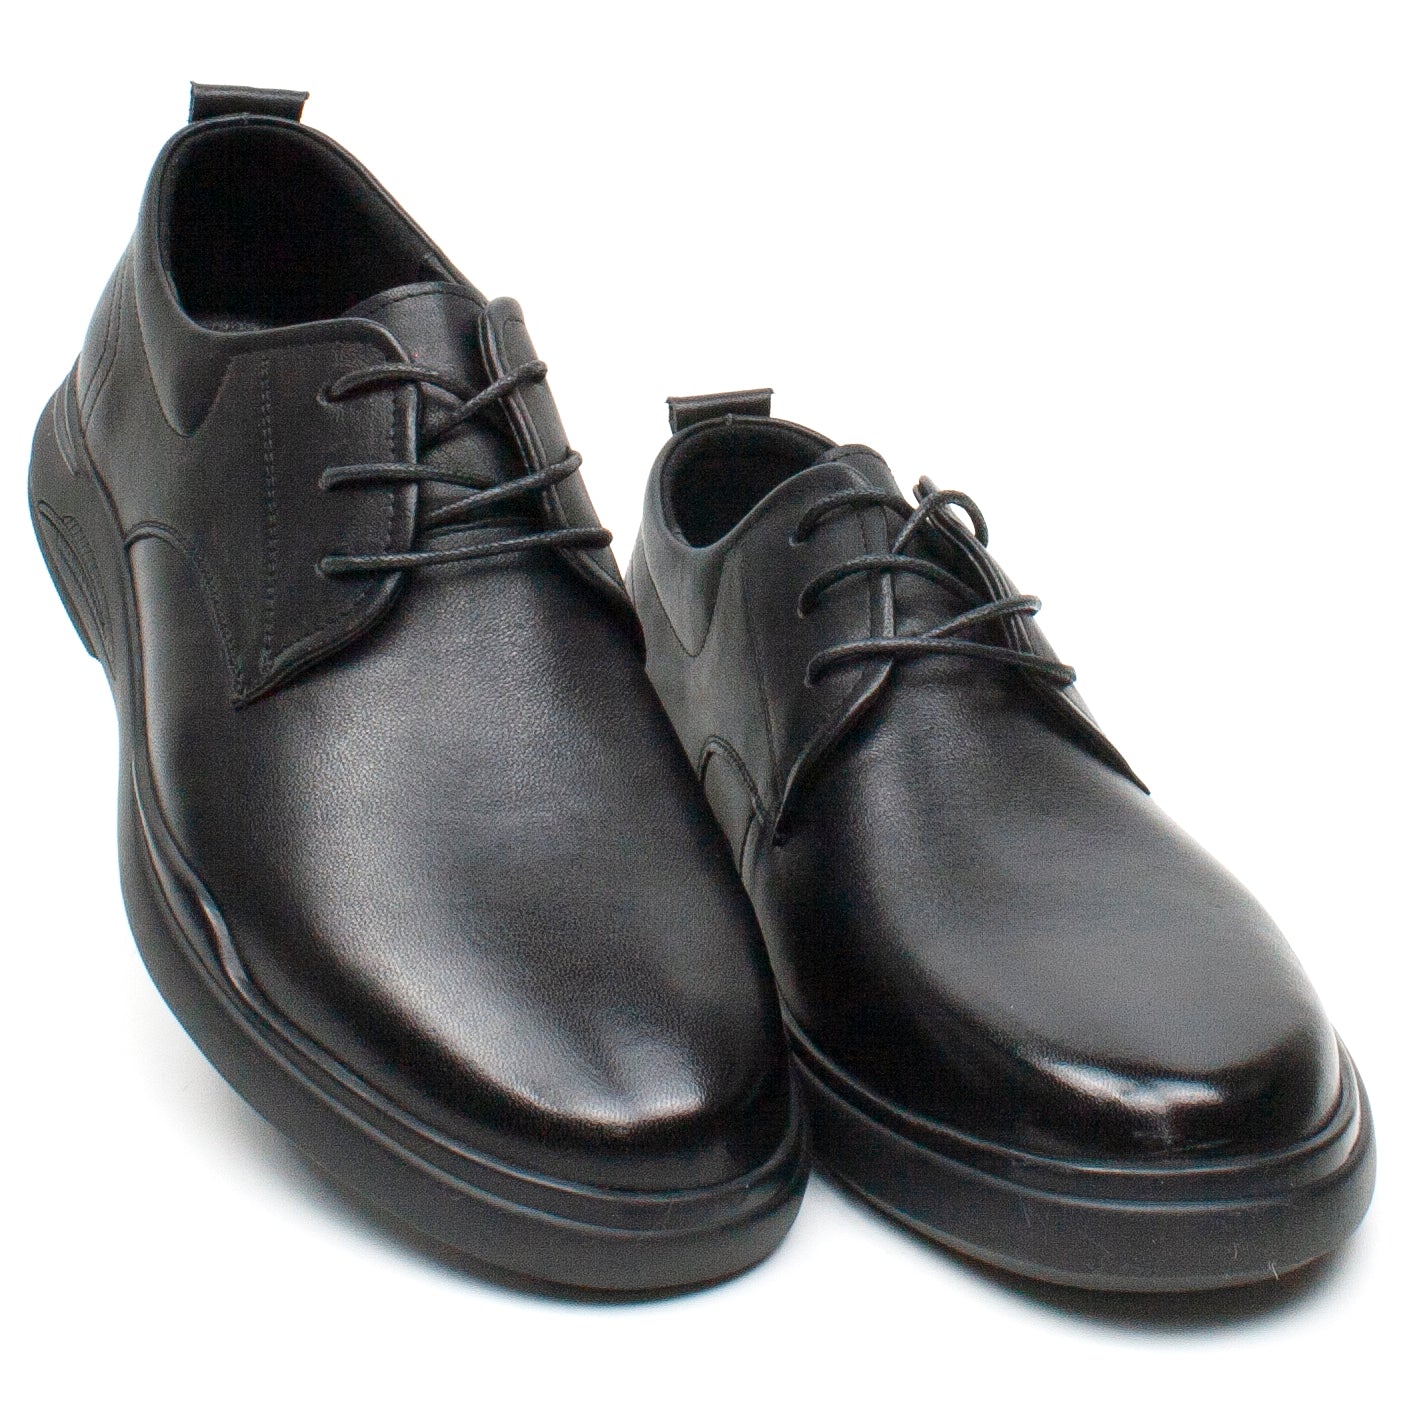 Mels Pantofi barbati W2301 negru IB2285-NG